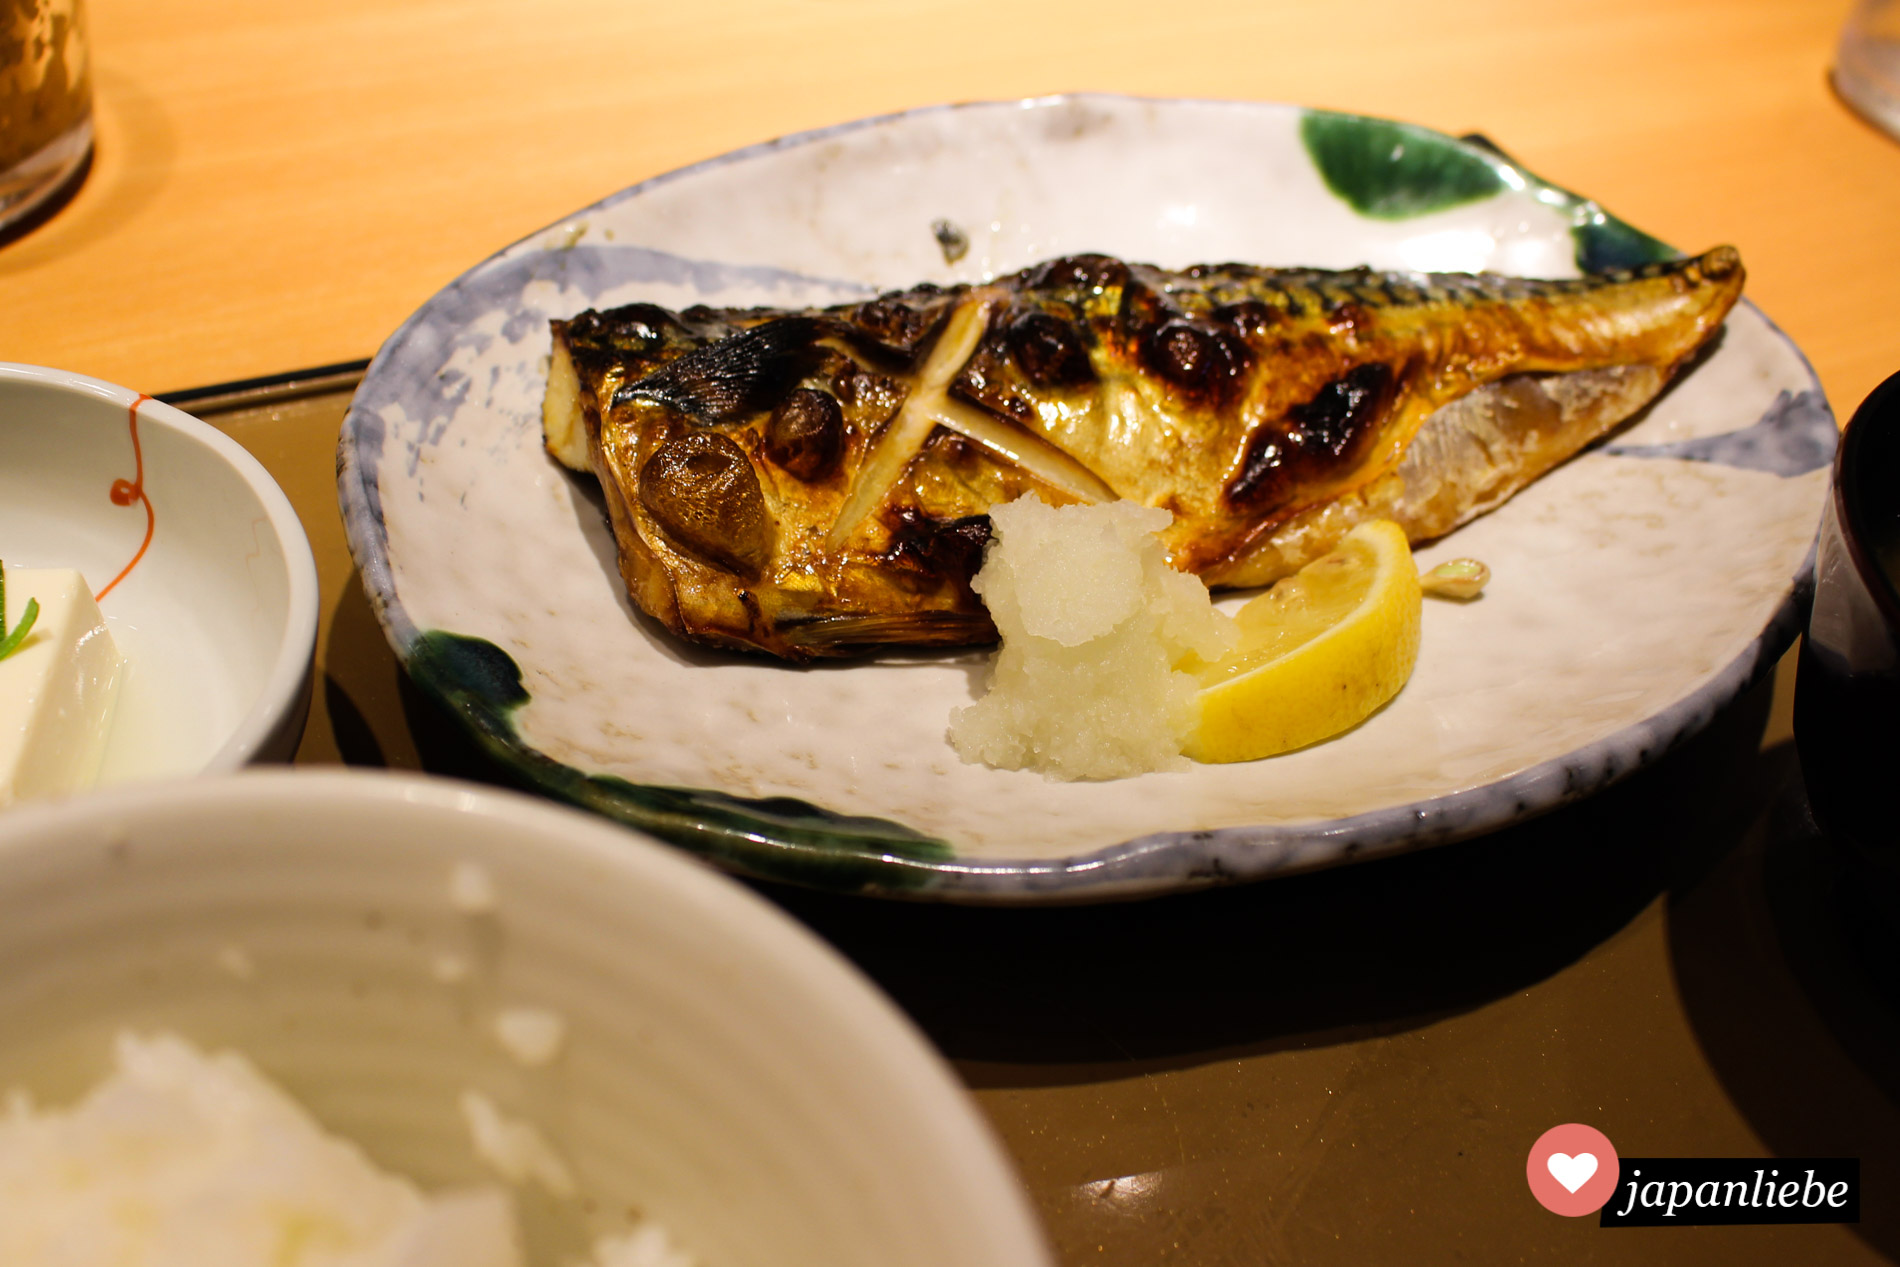 Besonders lecker ist Fisch zum japanischen Frühstück, wenn er frisch gegrillt wurde.